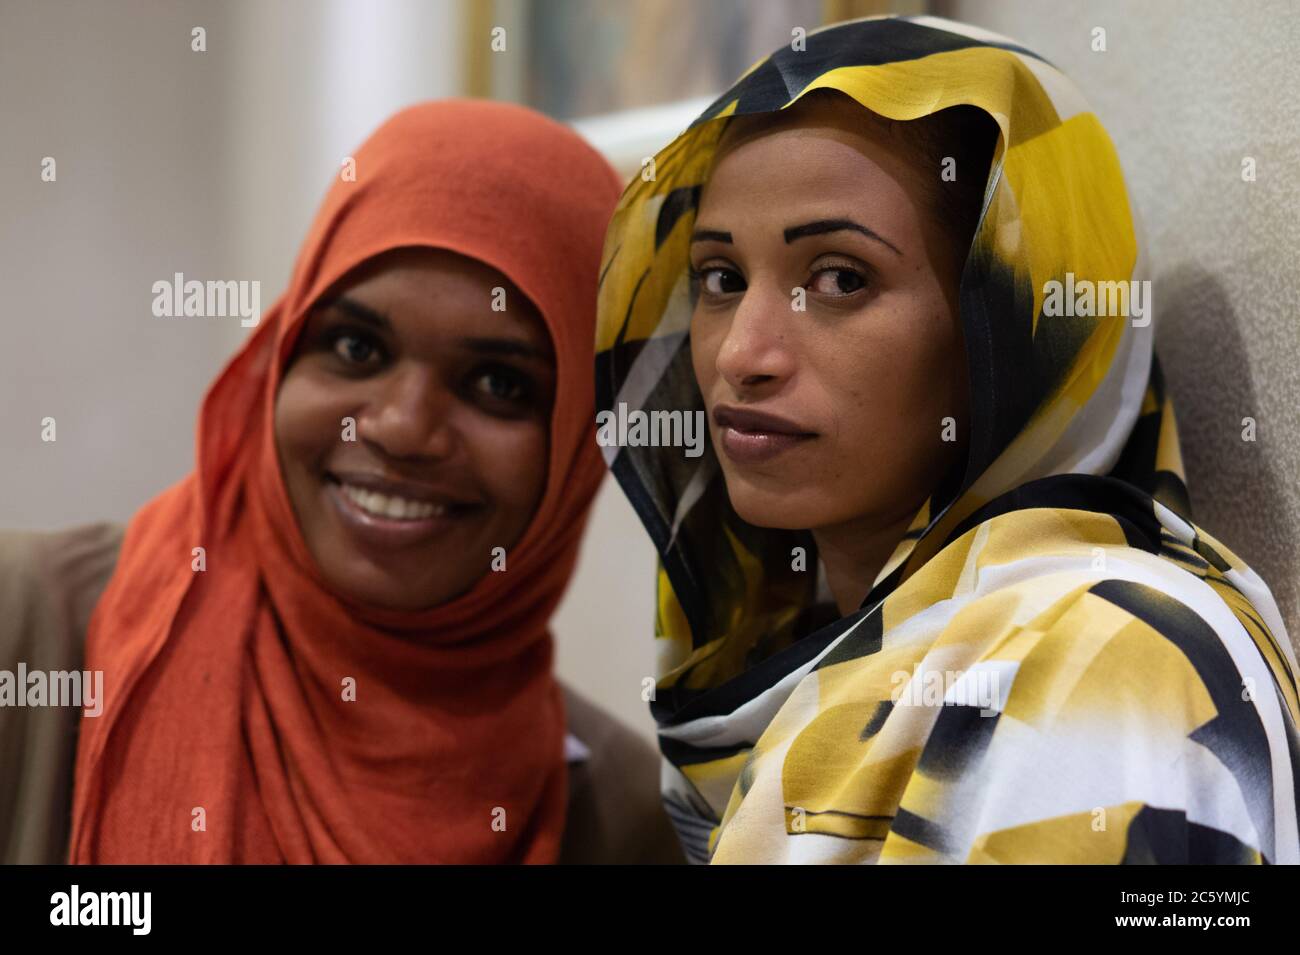 Khartoum dating in asian women Meet Pretty